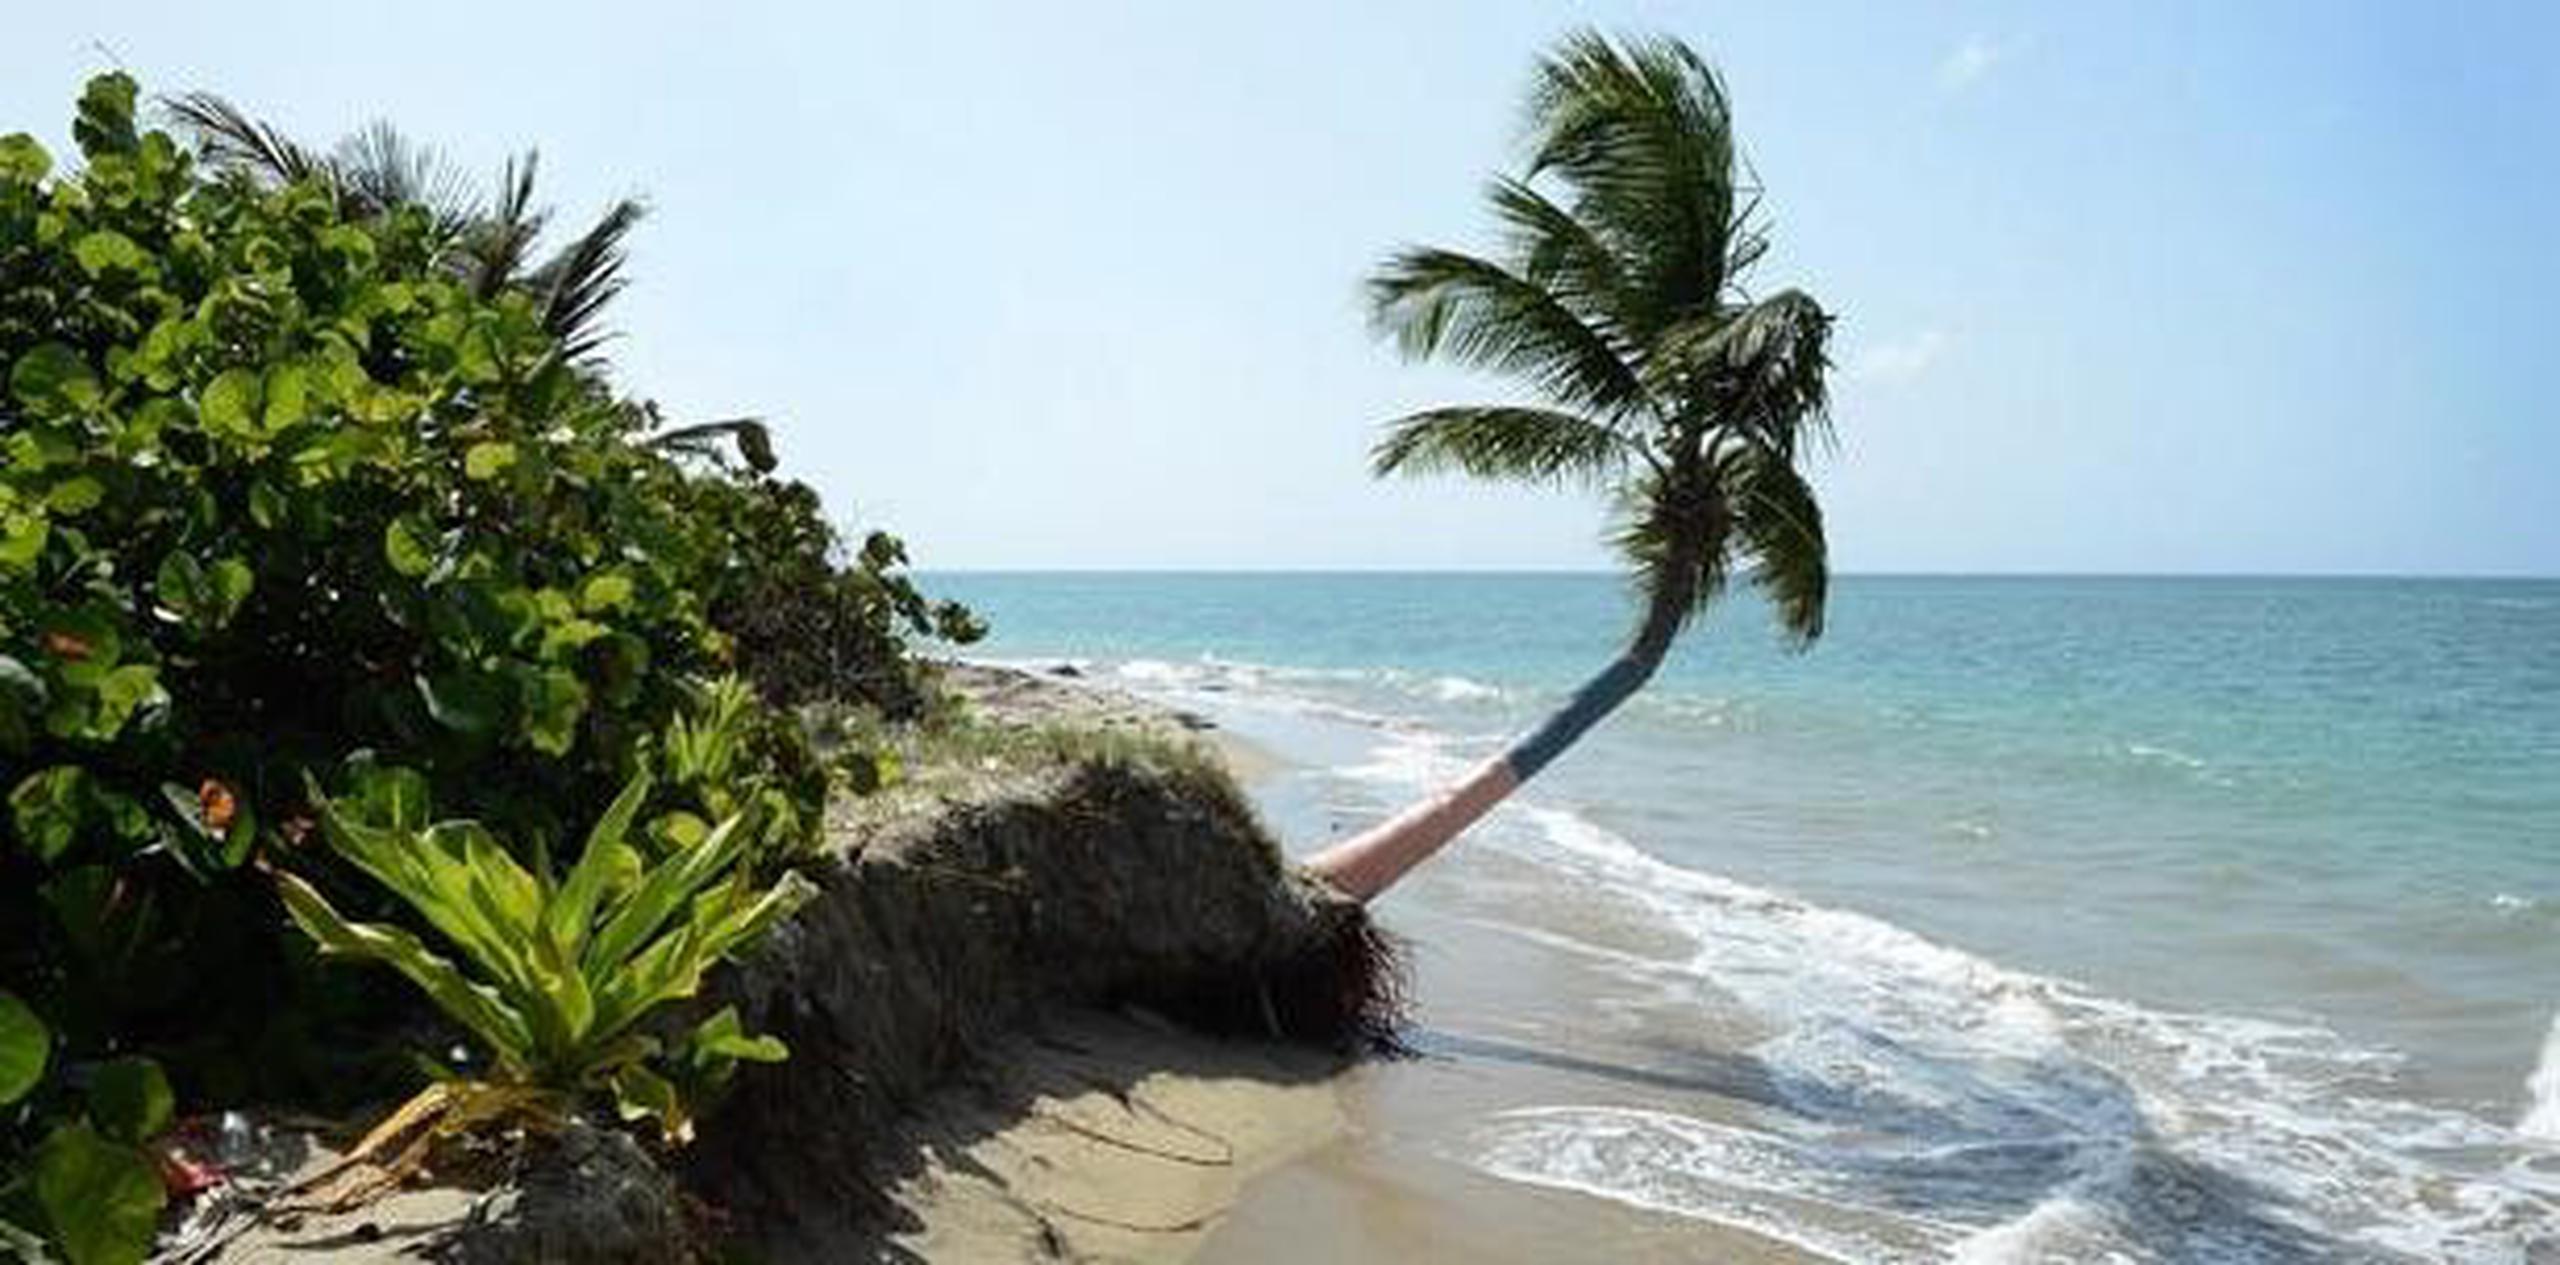 Algunas de las playas identificadas se encuentran en los municipios de Rincón, Aguadilla, Hatillo, Culebra, Vieques, Arecibo, Cabo Rojo, Loíza, Salinas, Carolina y San Juan.(Archivo)